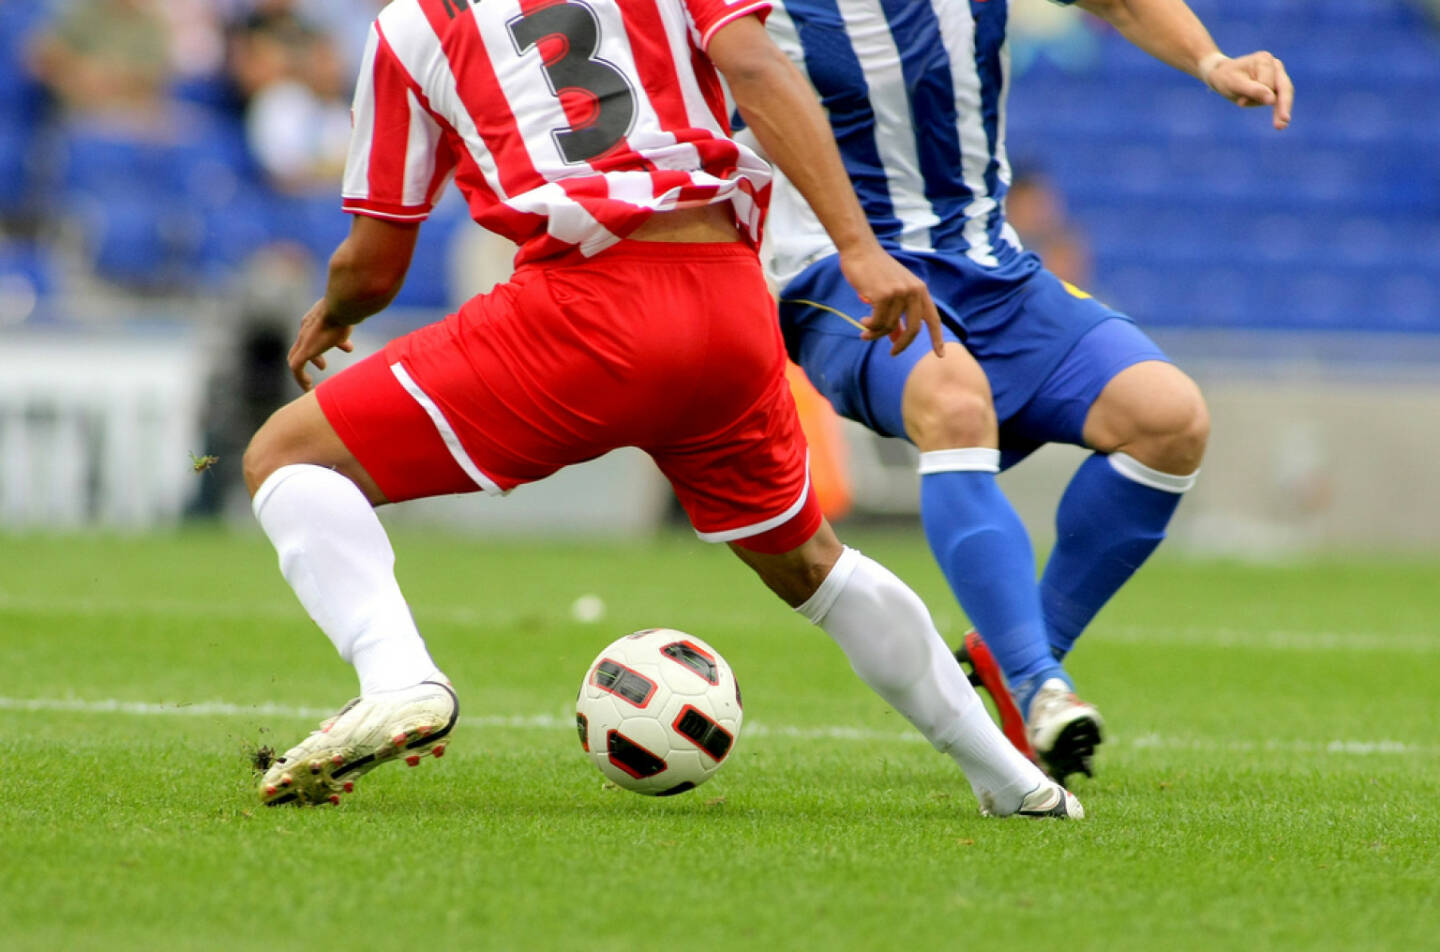 Fussball, Wettkampf, Zweikampf, Ball, http://www.shutterstock.com/de/pic-61347604/stock-photo-soccer-player-legs-in-action.html 